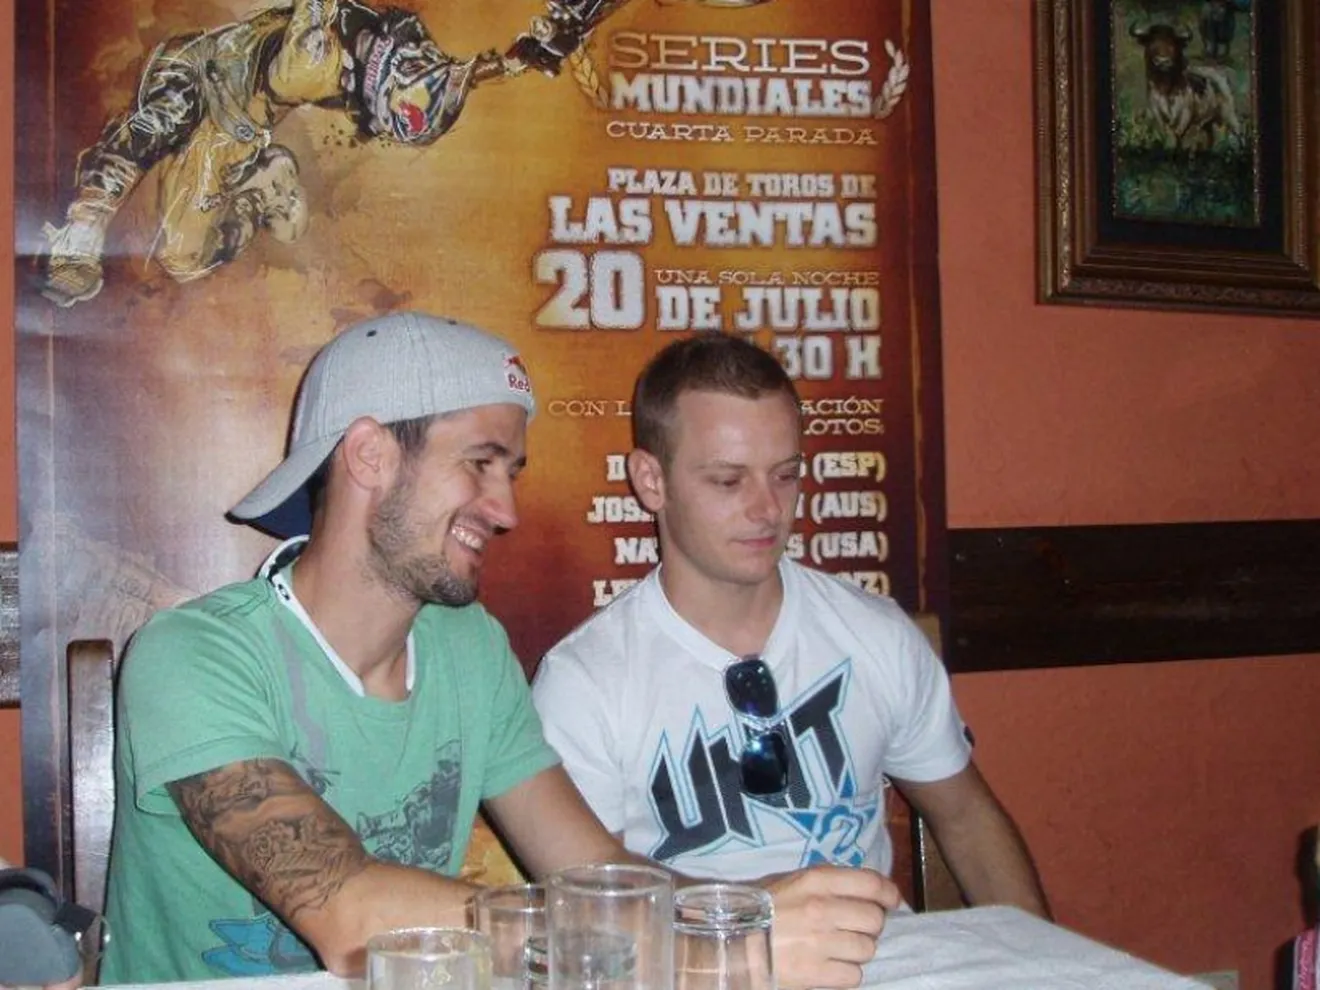 Torres y Melero aclaran detalles sobre X-Fighters y se preparan para Las Ventas